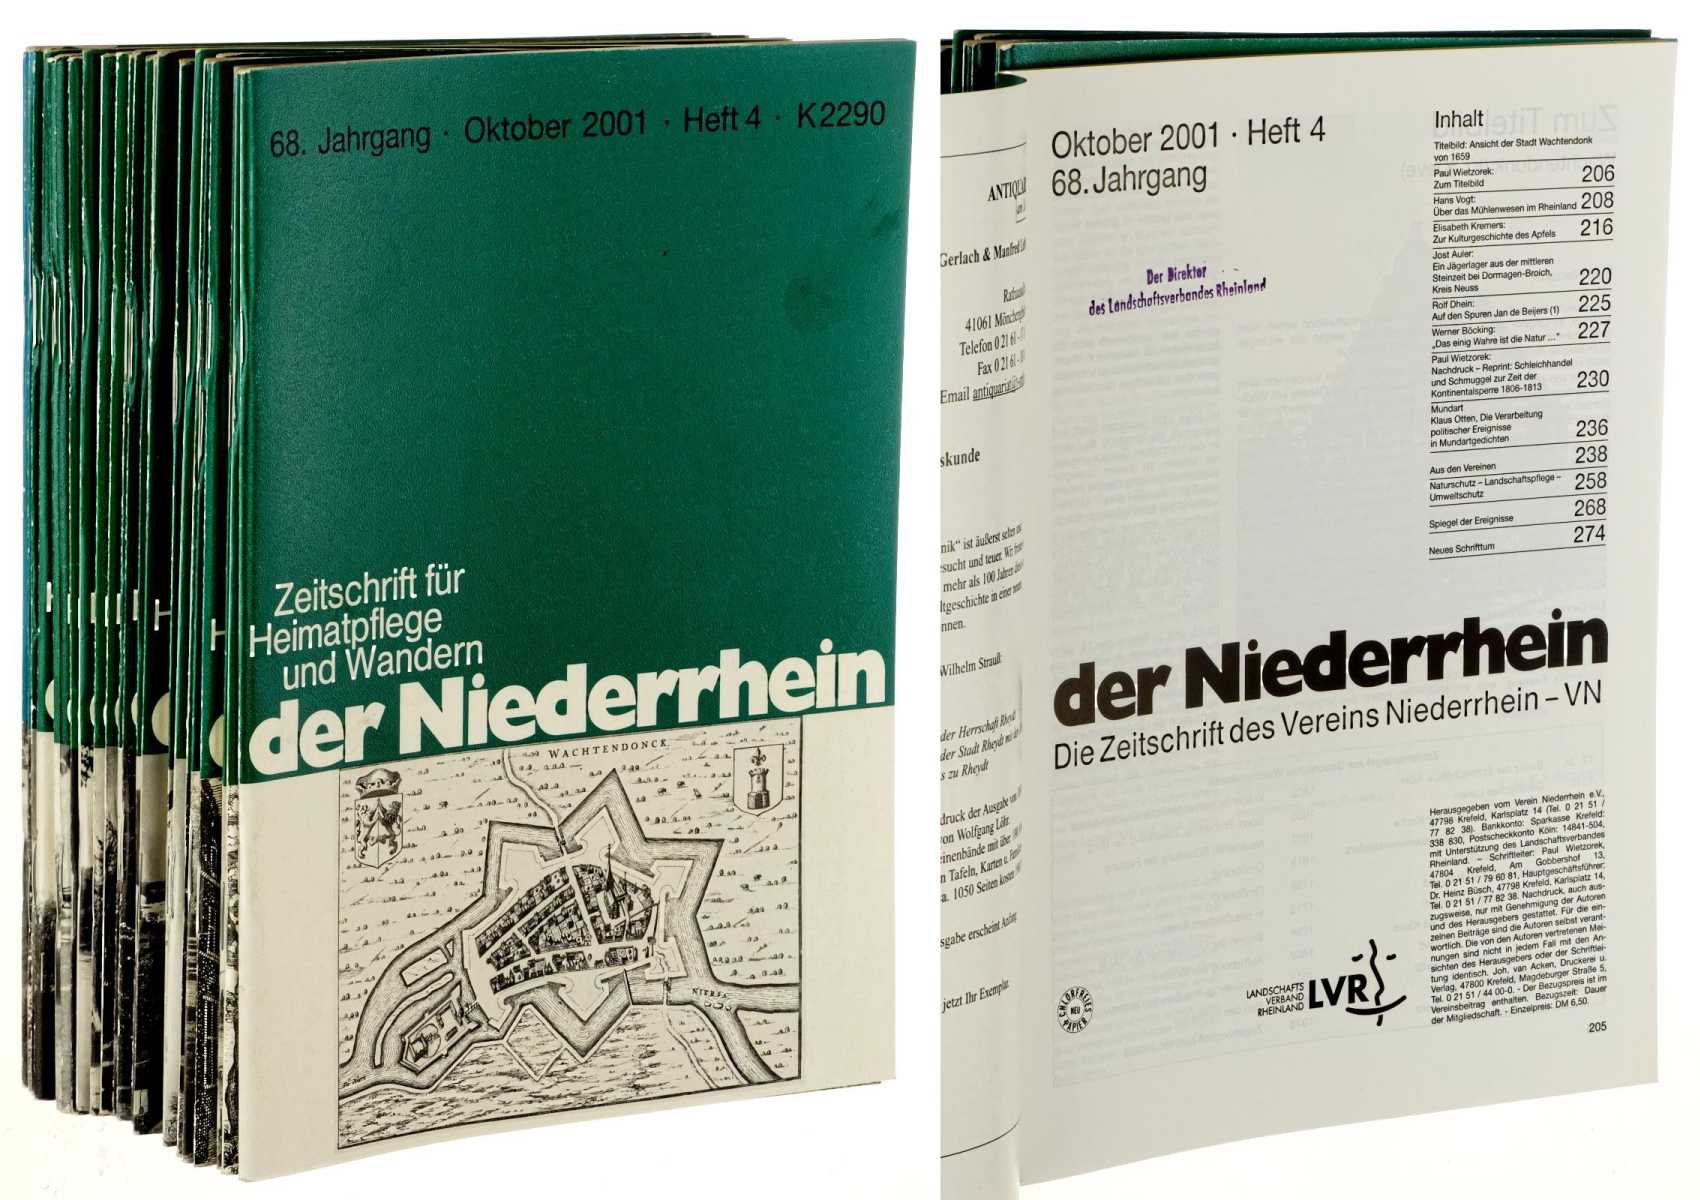   Der Niederrhein. Zeitschrift für Heimatpflege und Wandern. Die Zeitschrift des Vereins Niederrhein - VN (bis 1992: des Vereins Linker Niederrhein - VLN). Hrsg. vom Verein Niederrhein e.V. (bis 1992: Verein Linker Niederrhein). 